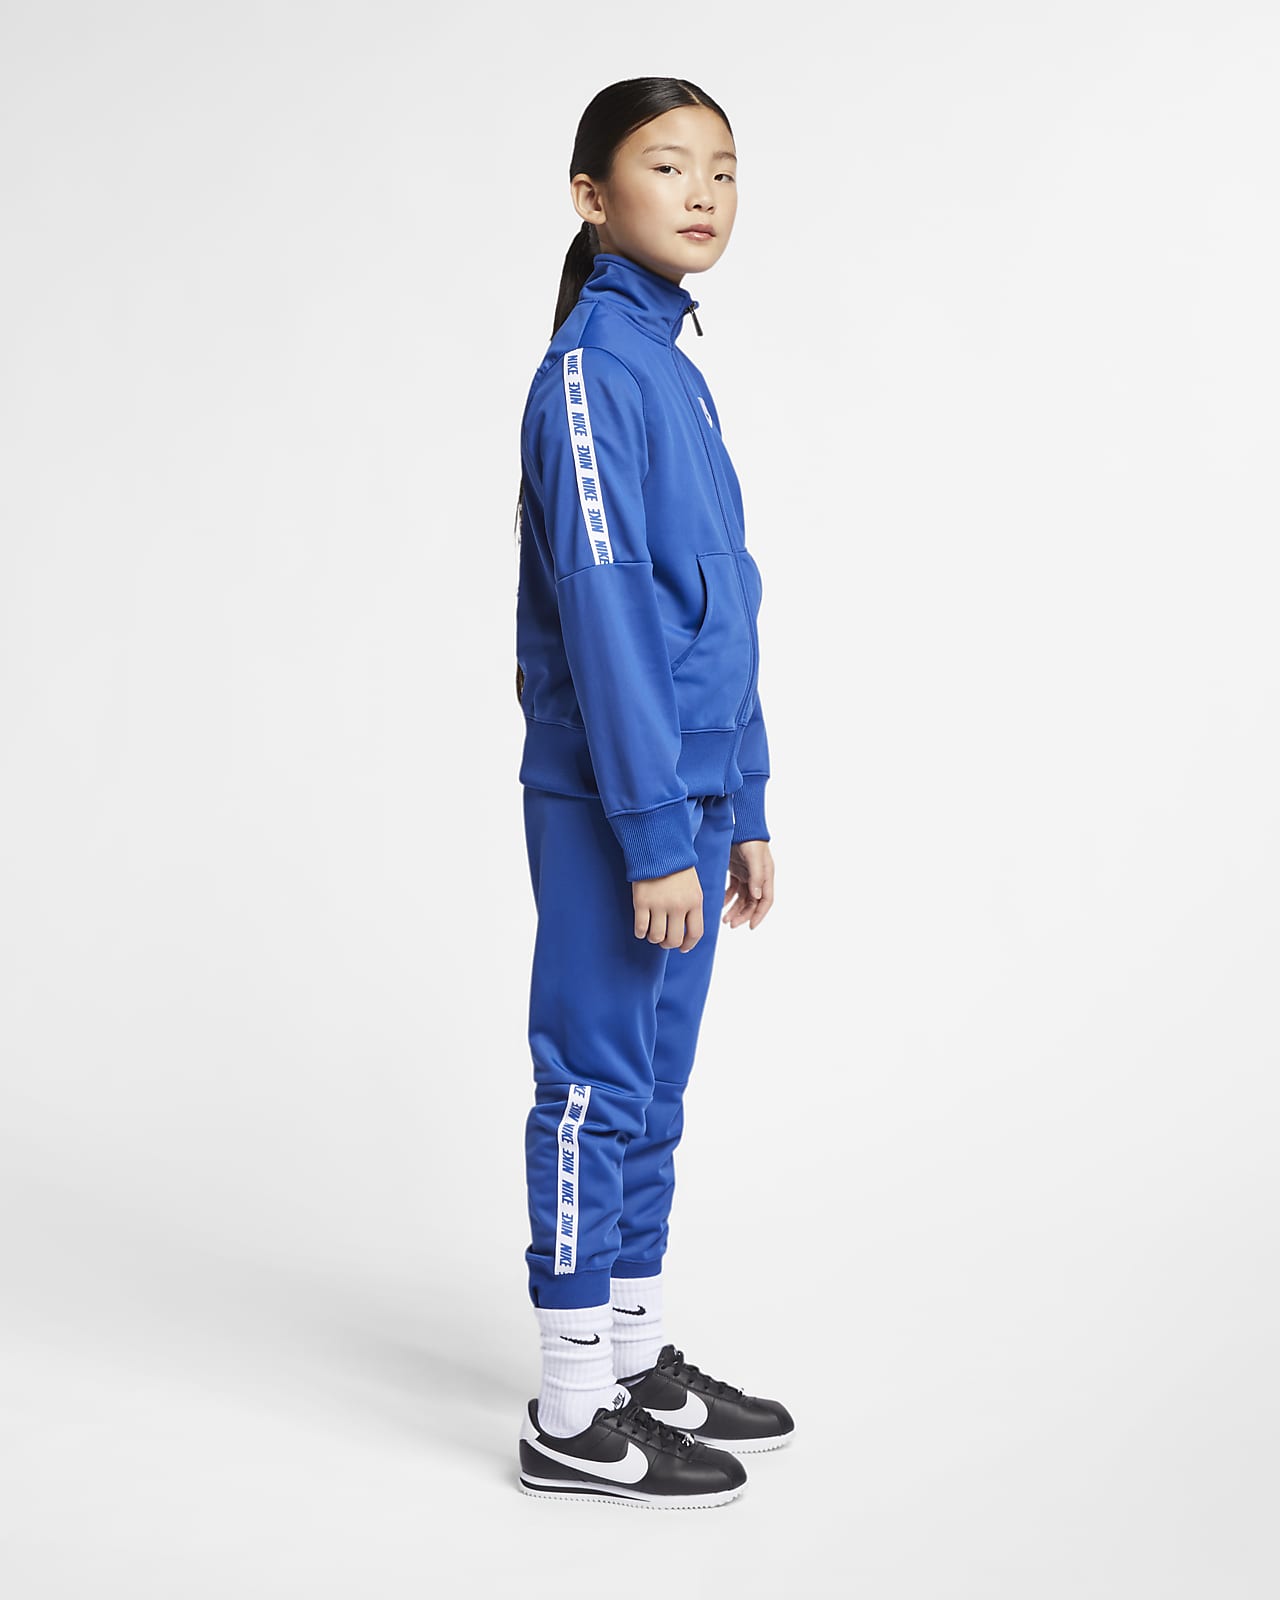 Nike Sportswear Older Kids' (Girls') Tracksuit